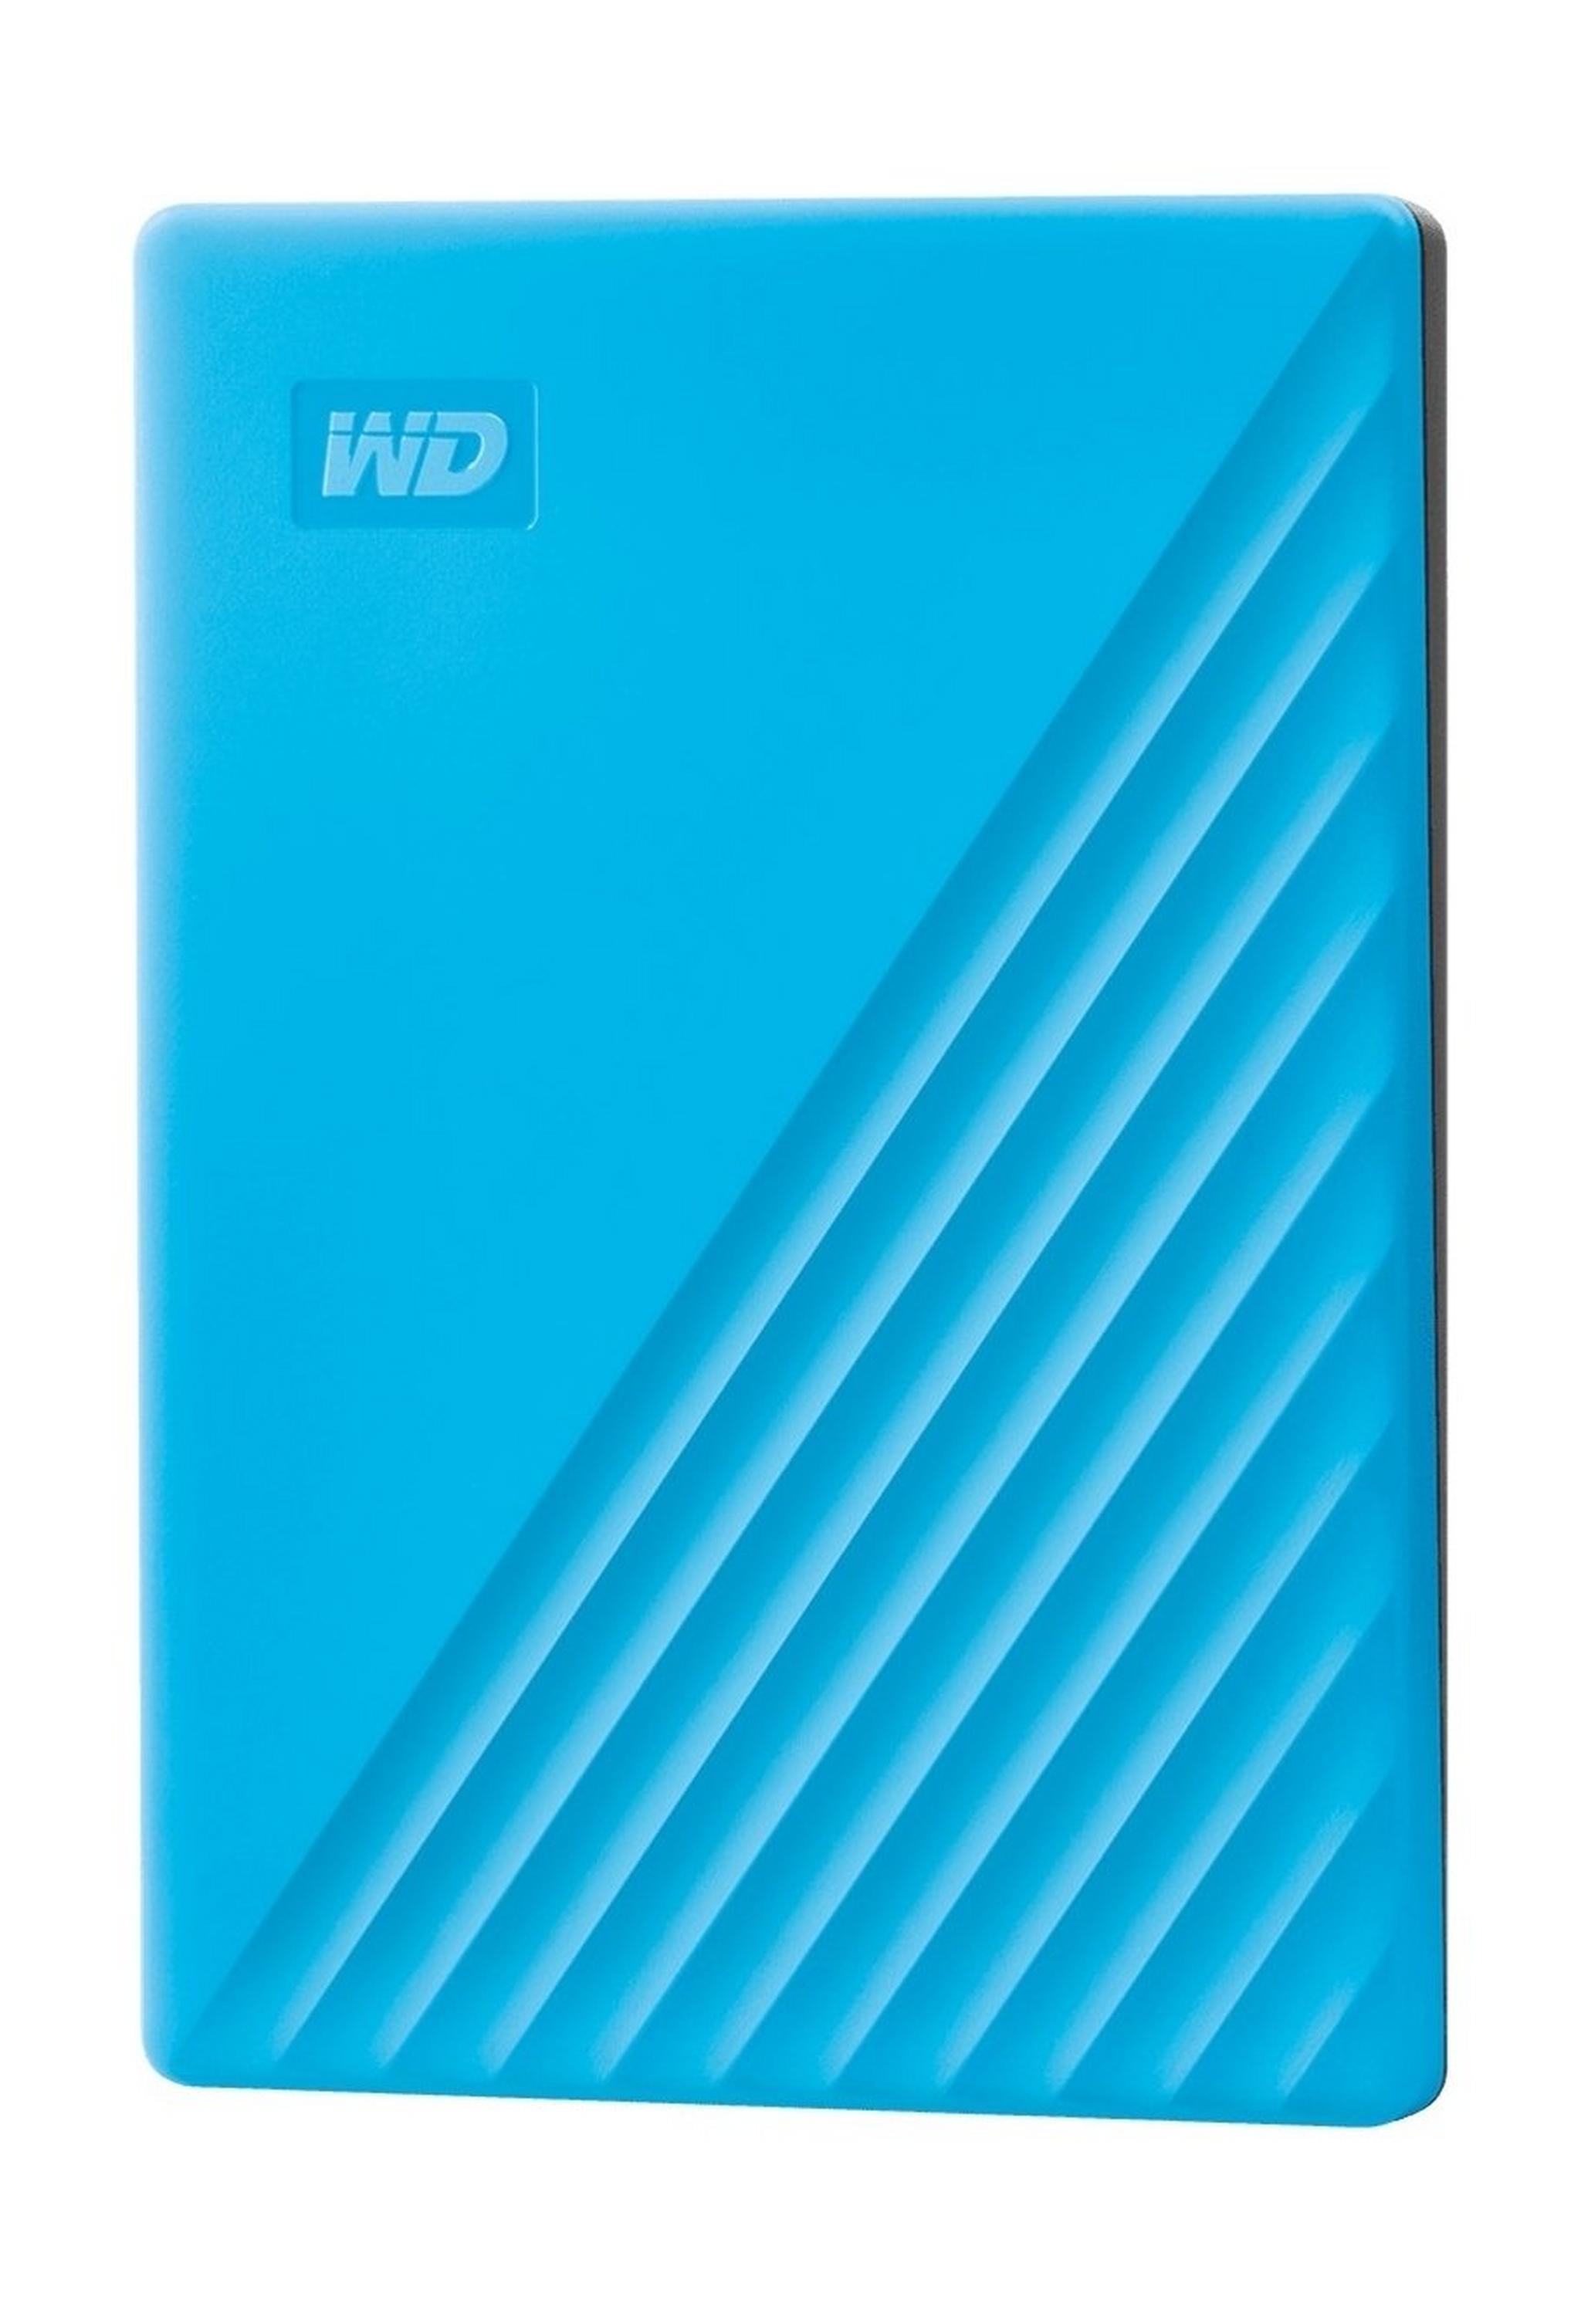 Western Digital My Passport 2TB Portable HDD - Blue